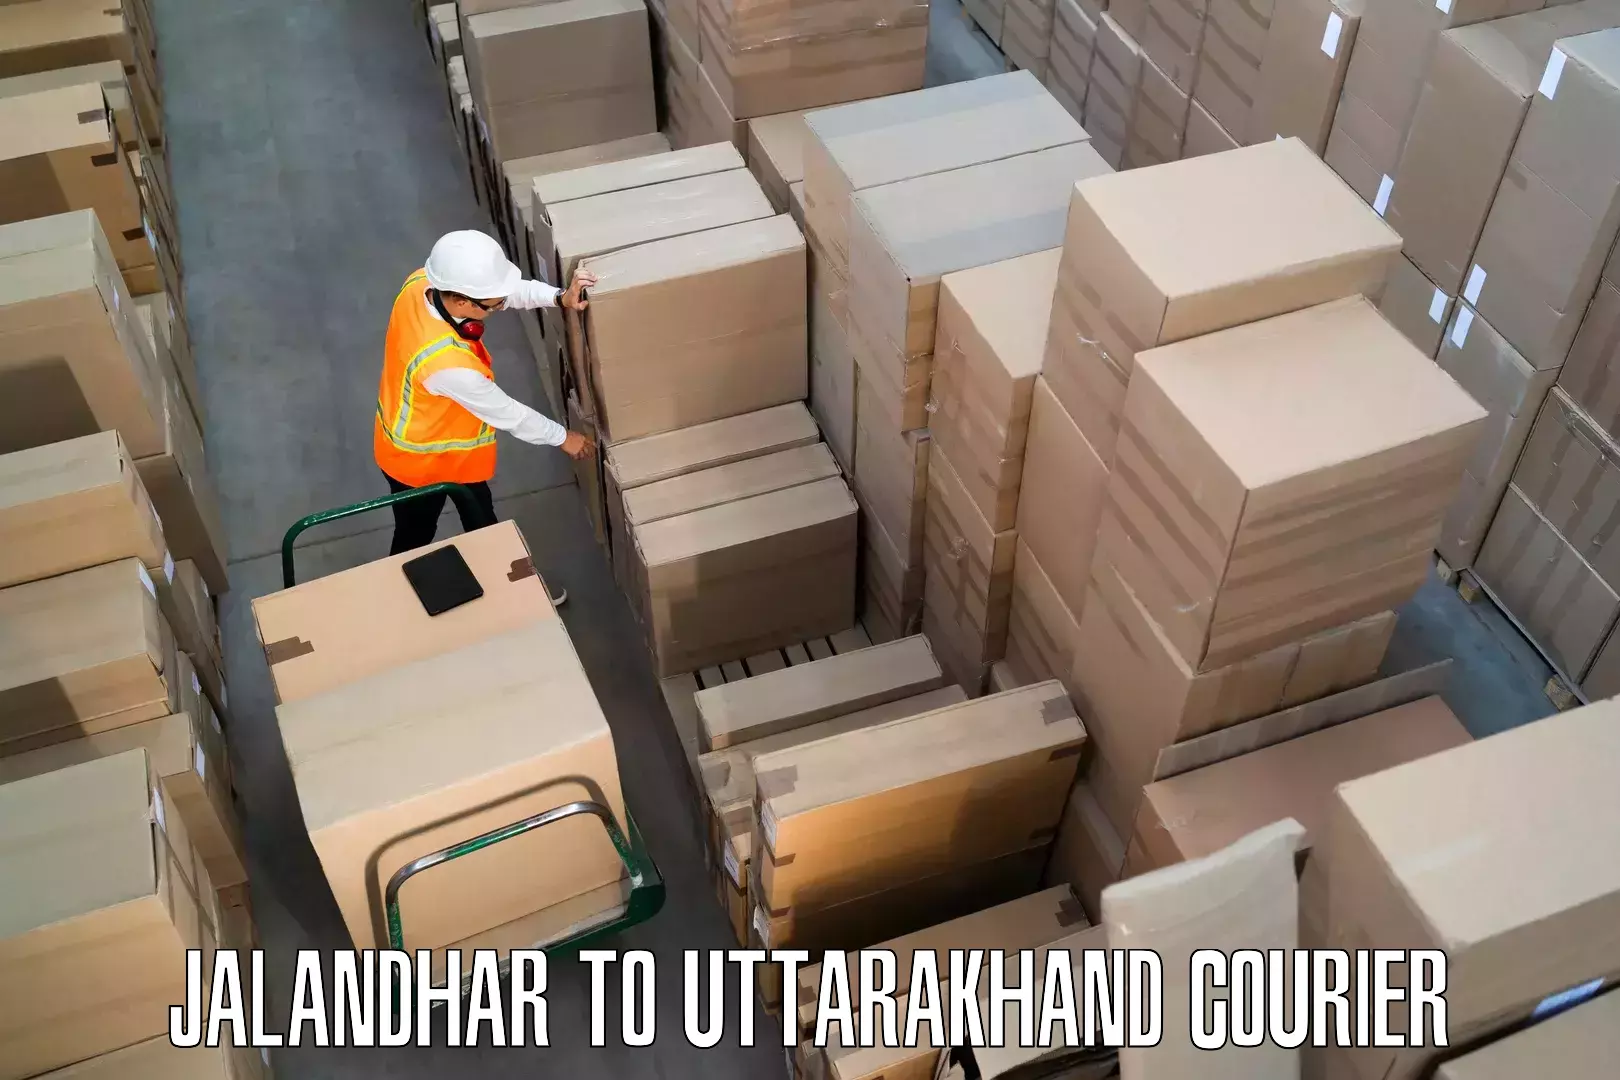 Furniture moving experts Jalandhar to Roorkee